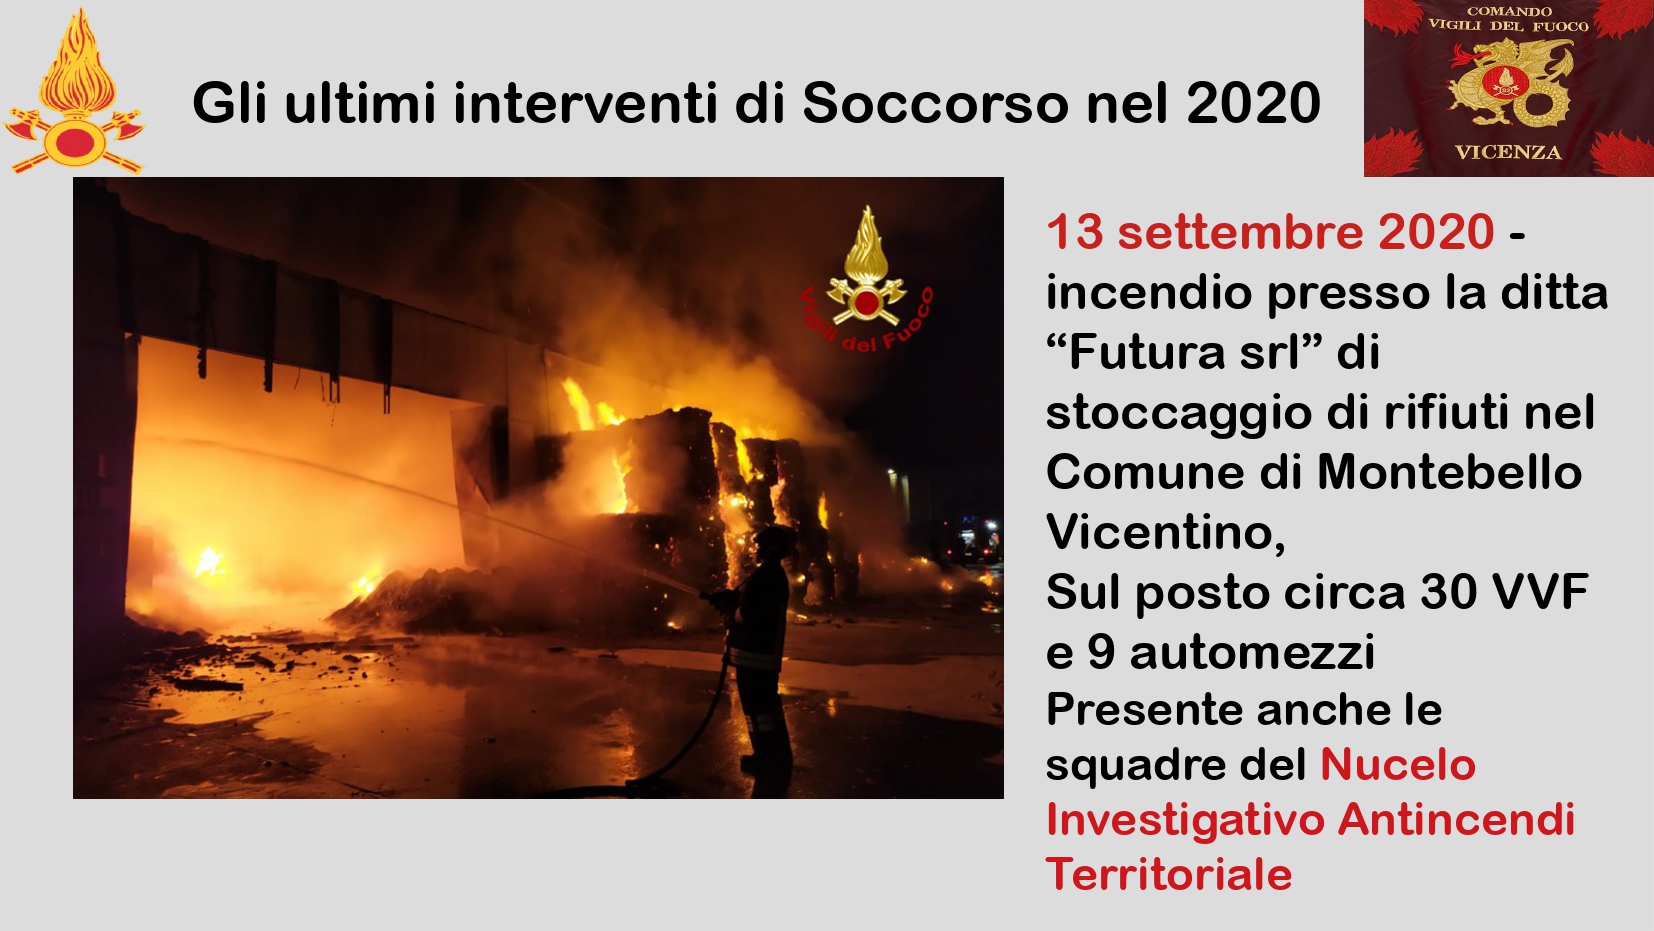 Presentazione_ Comando Vicenza_page-0023